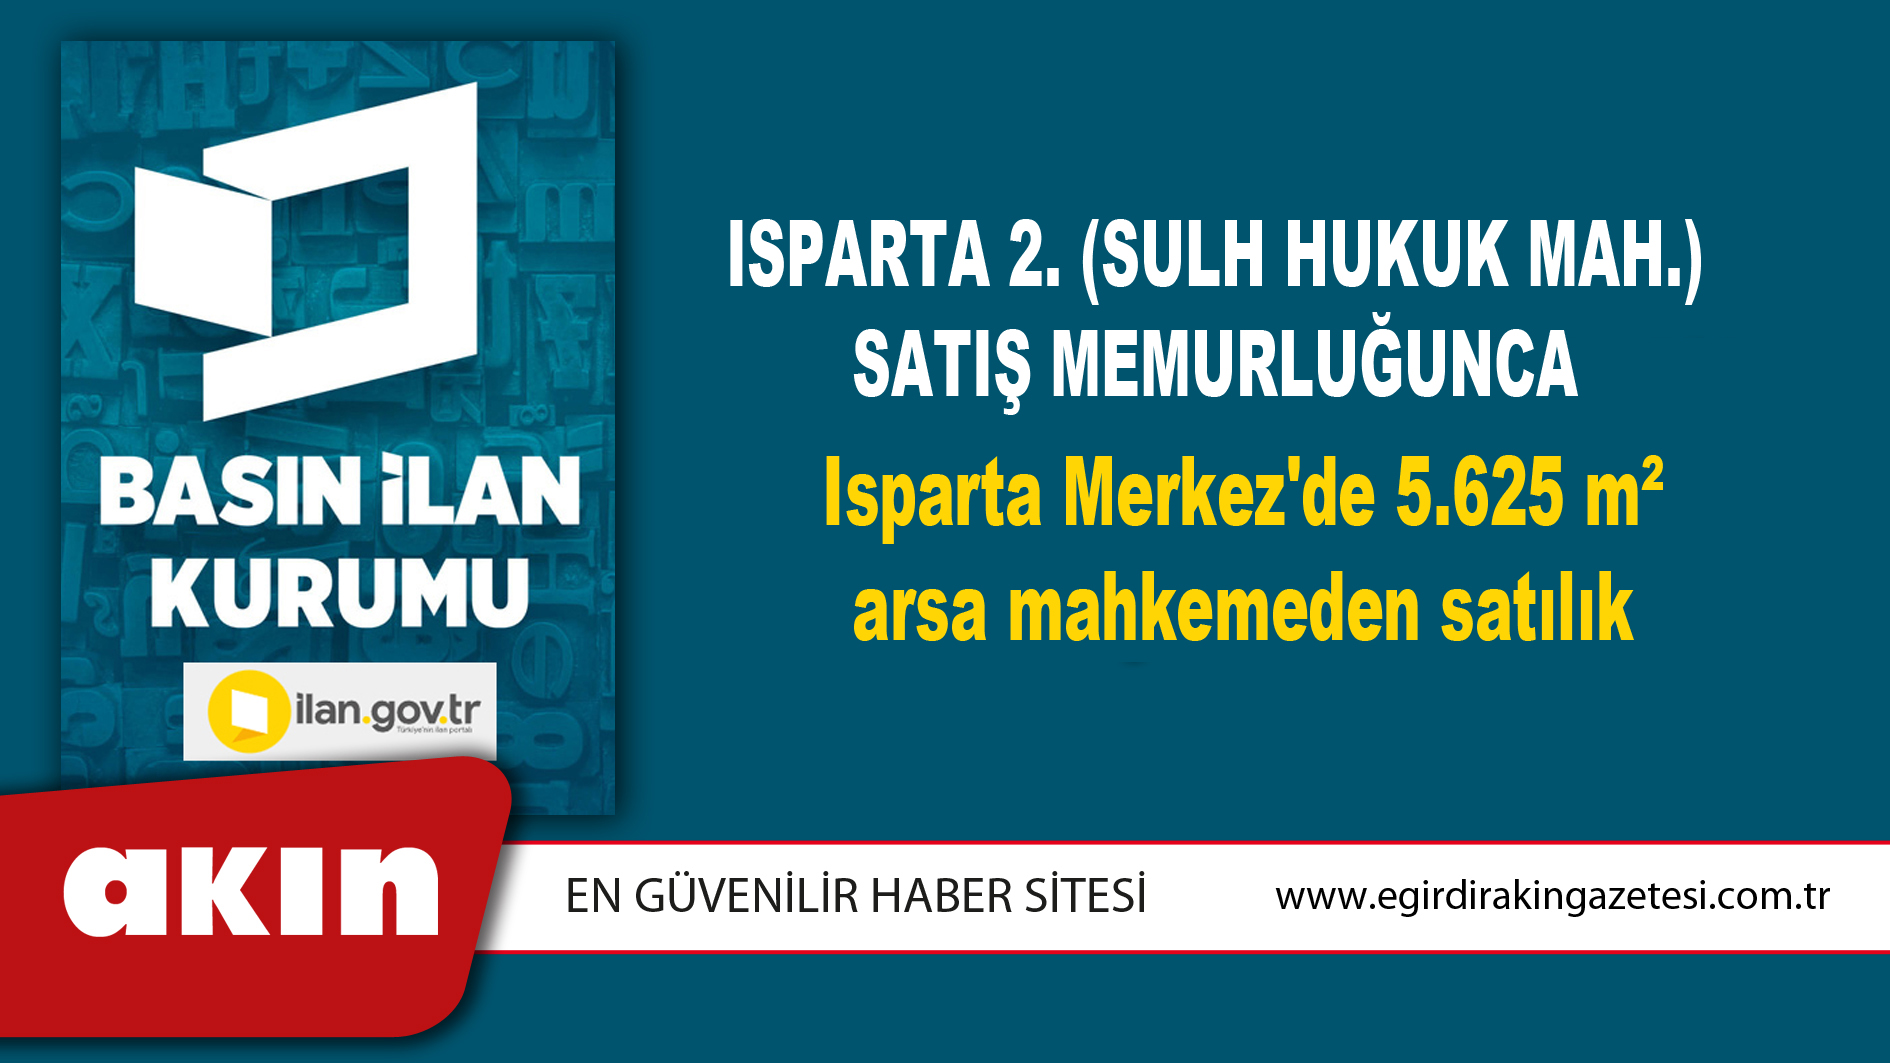 Isparta 2. (Sulh Hukuk Mah.) Satış Memurluğunca Isparta Merkez'de 5.625 m² arsa mahkemeden satılık